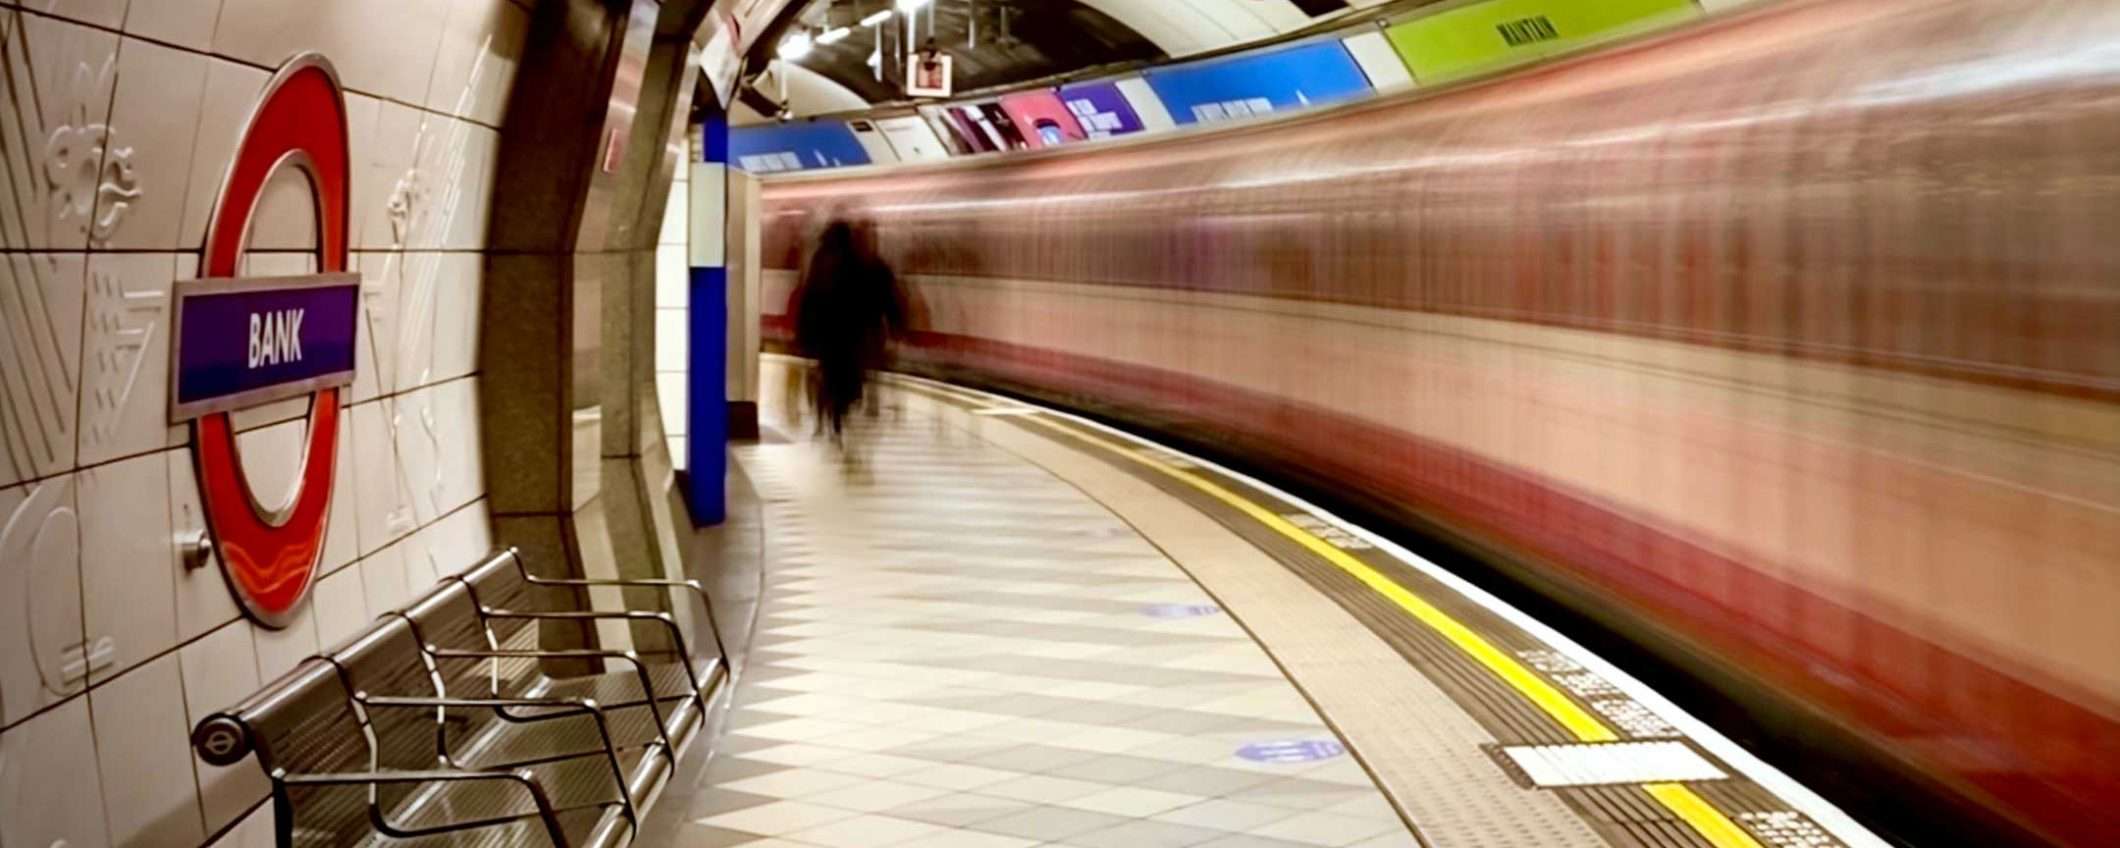 Bitcoin: pubblicità ingannevole in metro a Londra